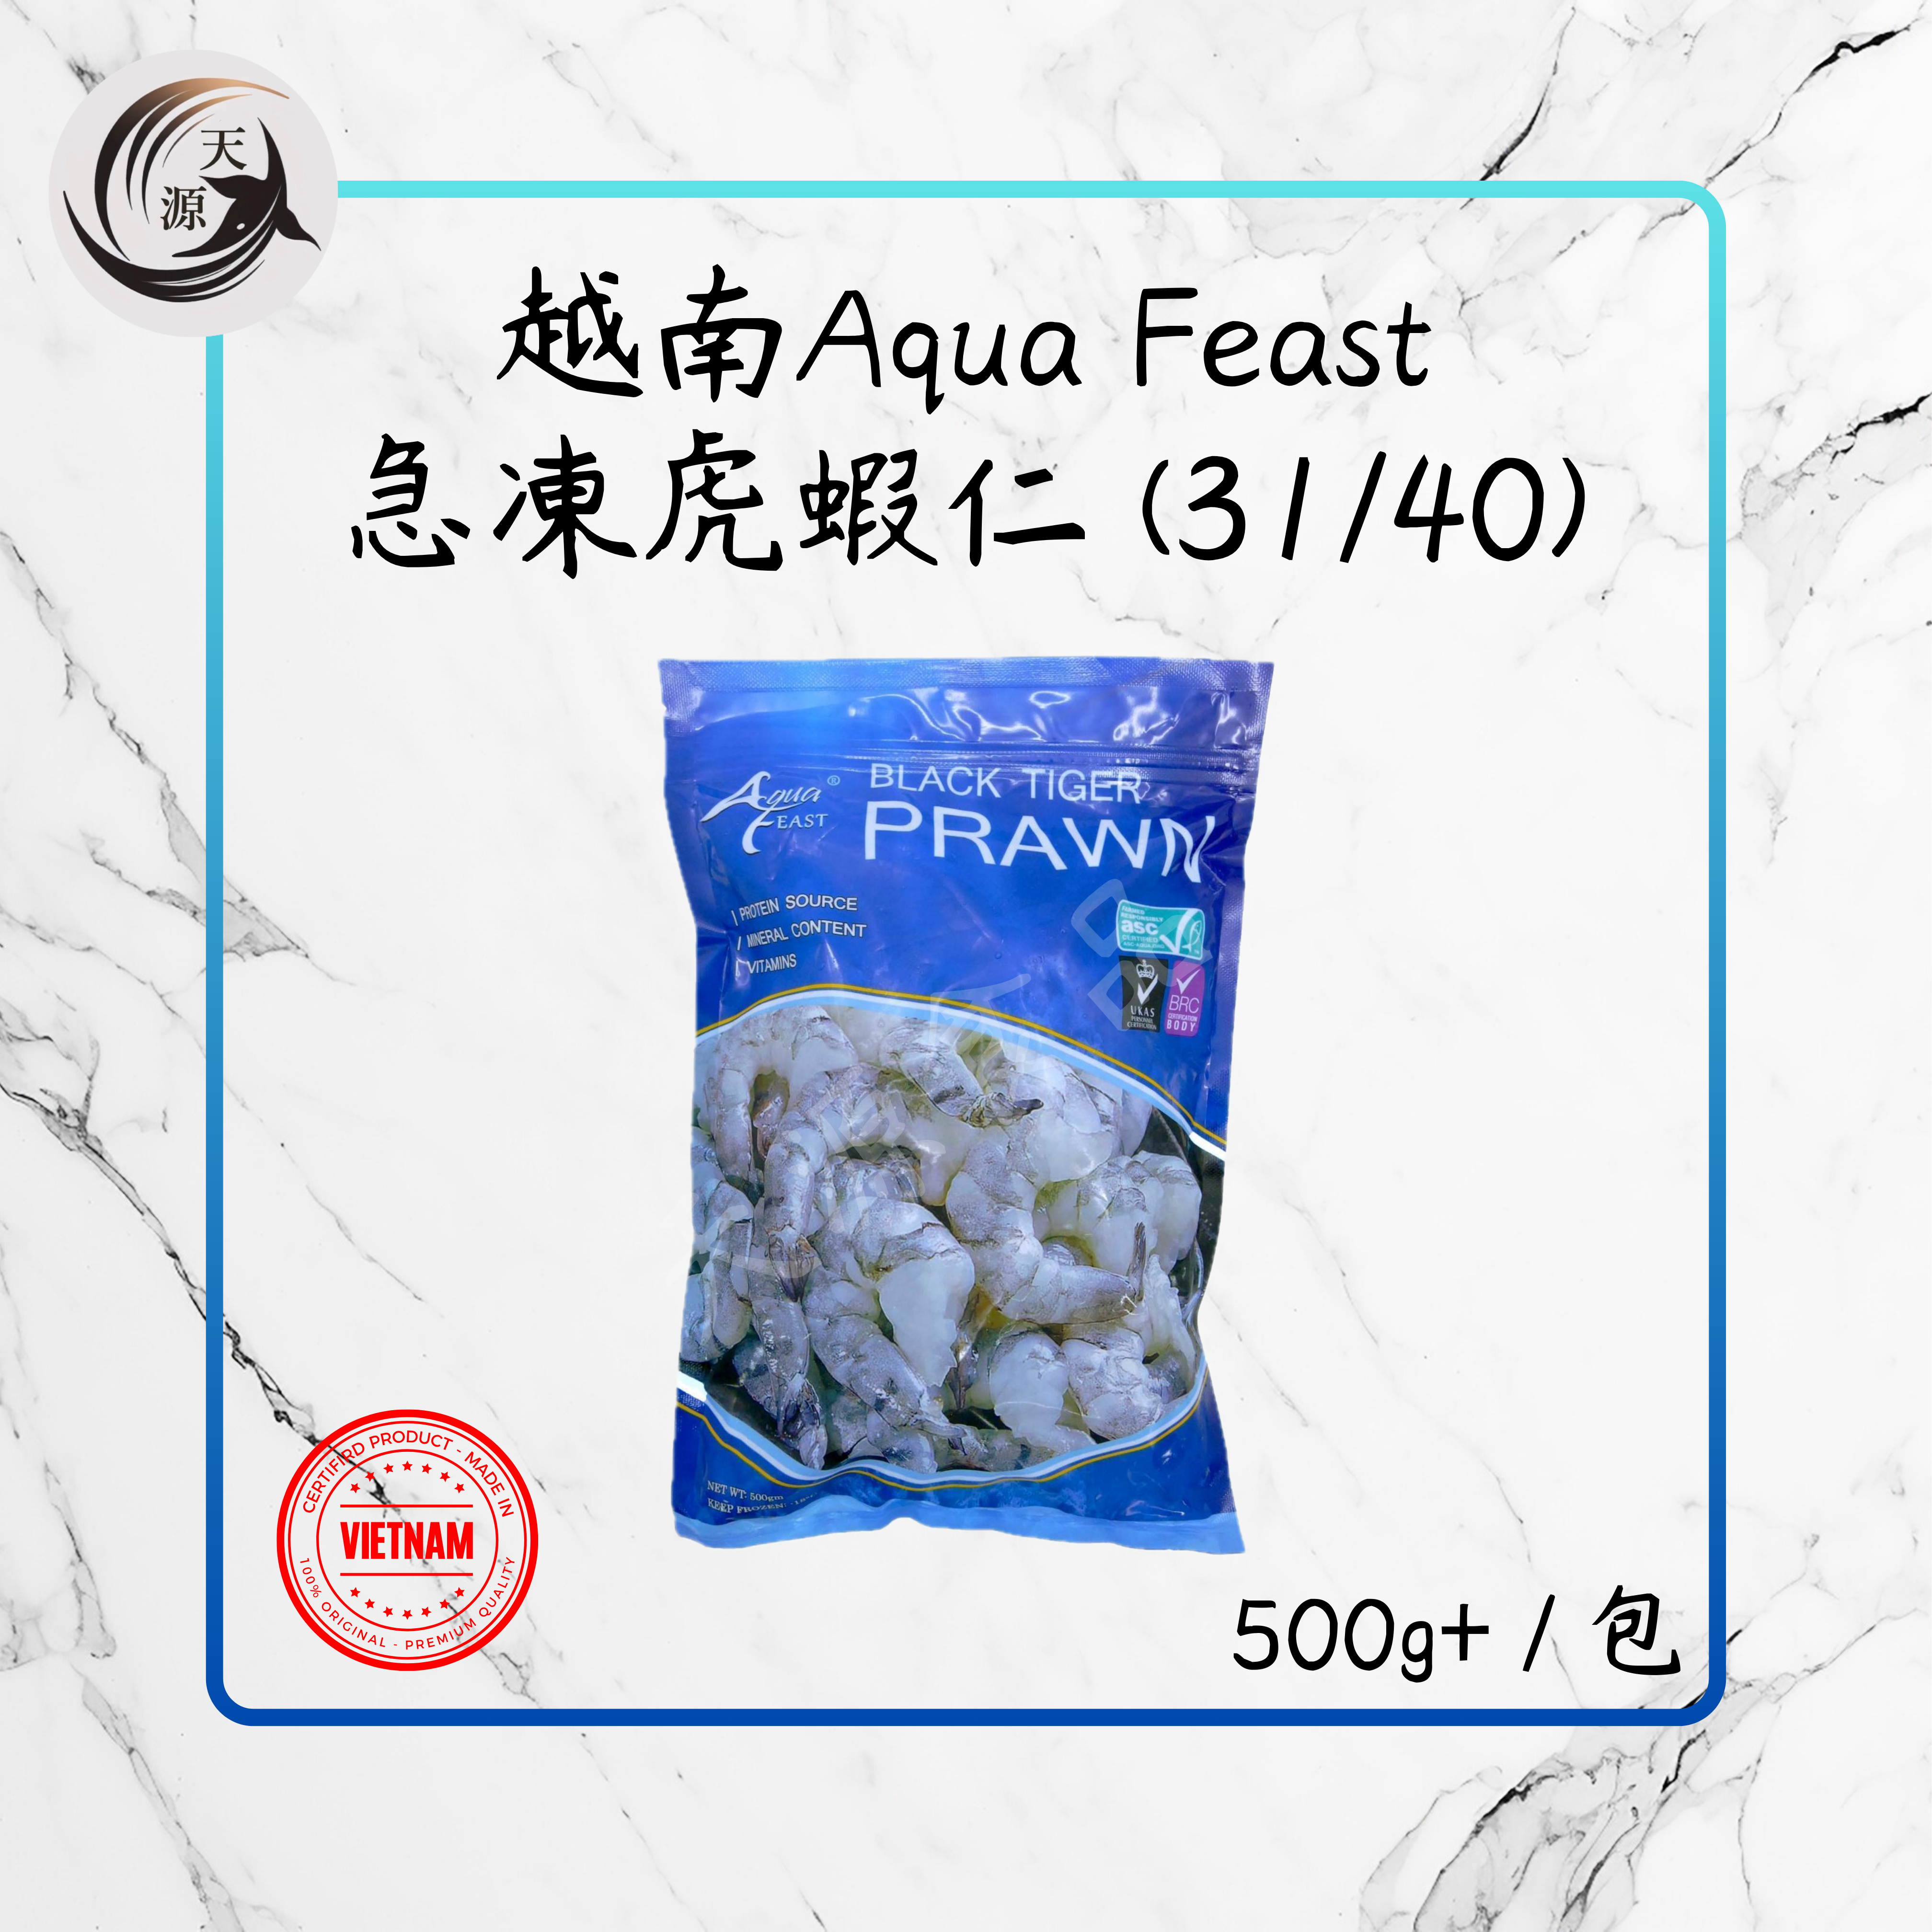 Vietnam Aqua Feast Frozen Tiger Shrimp (31/40) 500g